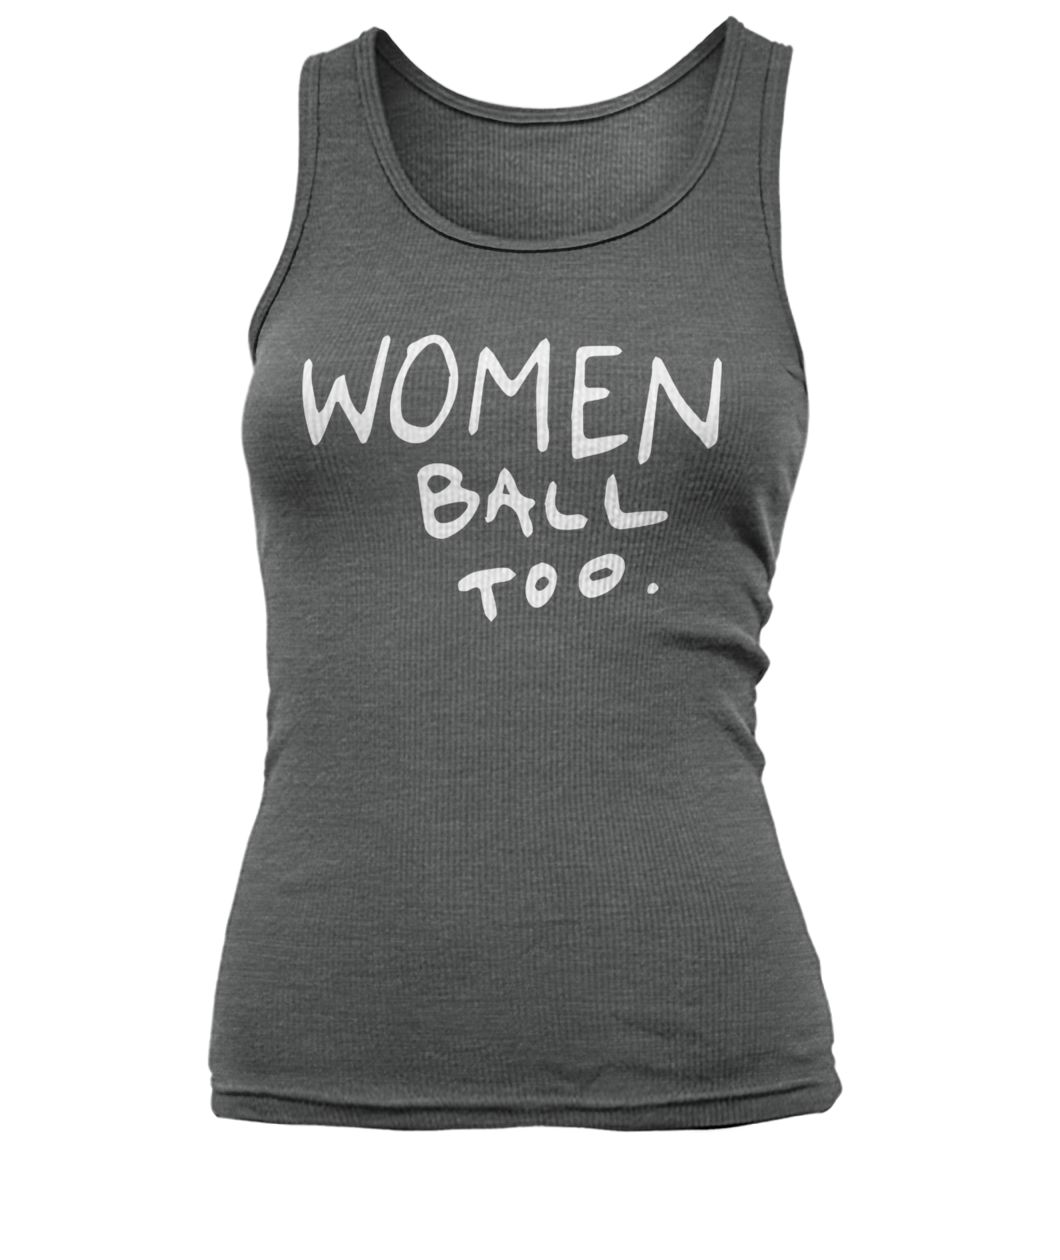 NBA jordan bell women ball too women's tank top